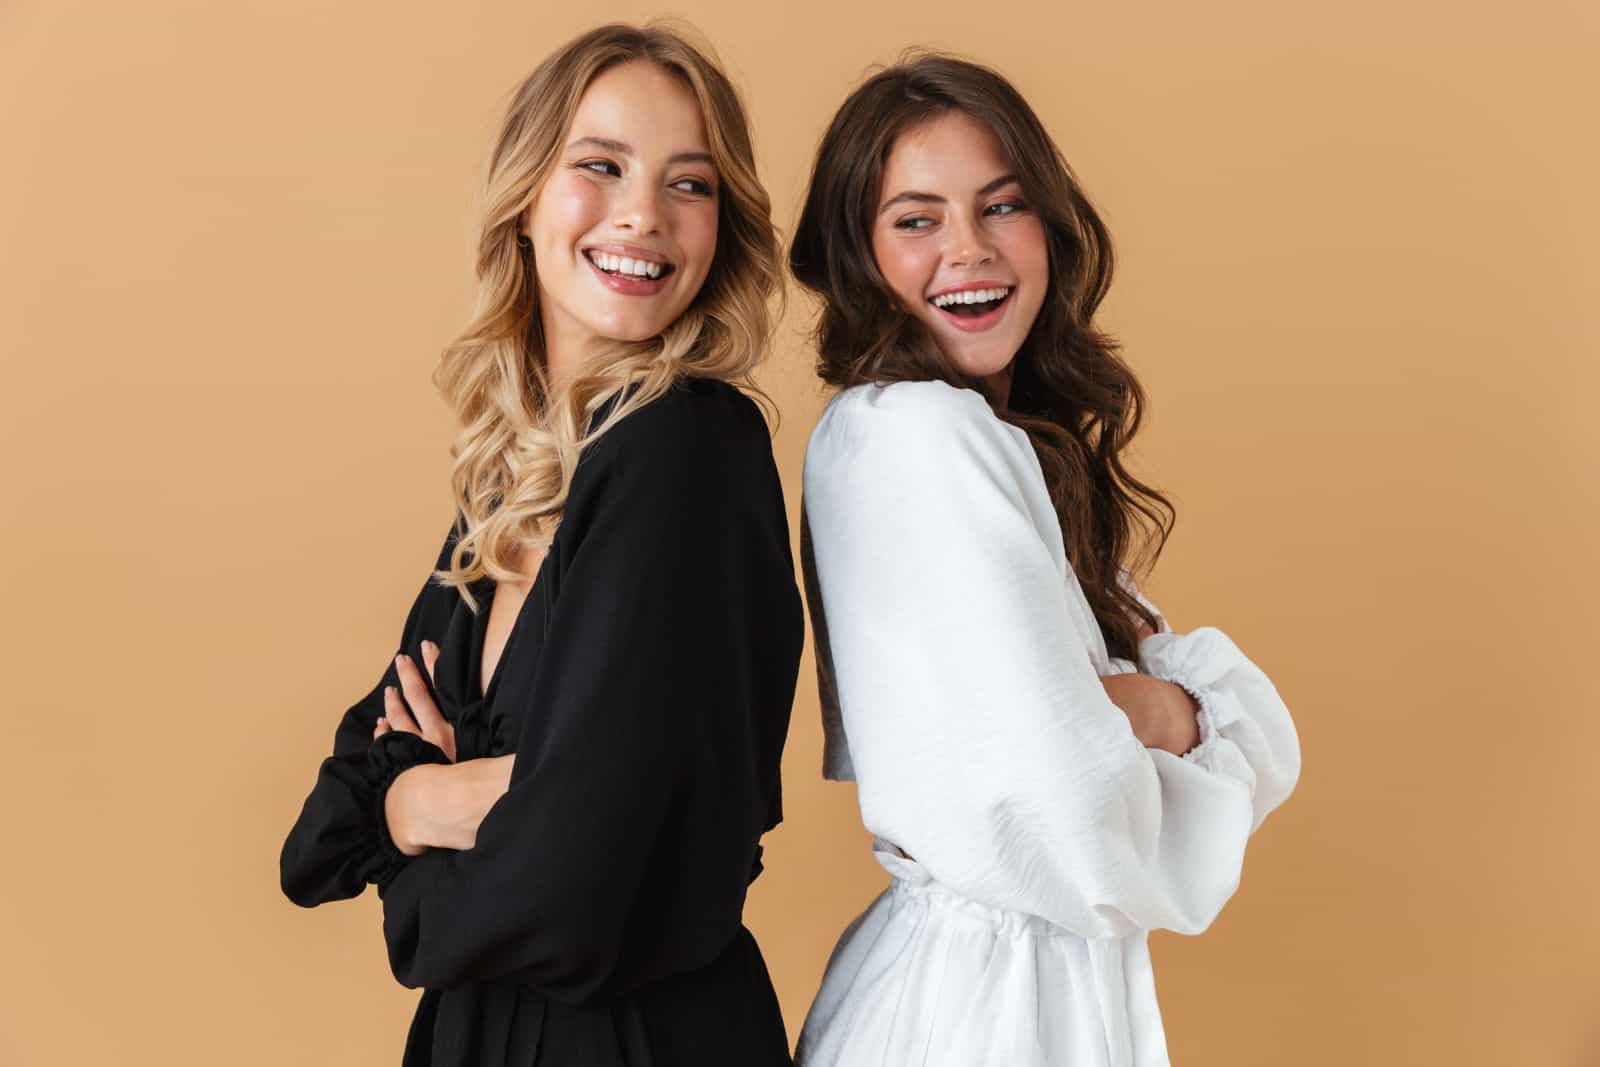 Retrato de dos mujeres felices con ropa blanca y negra sonriendo